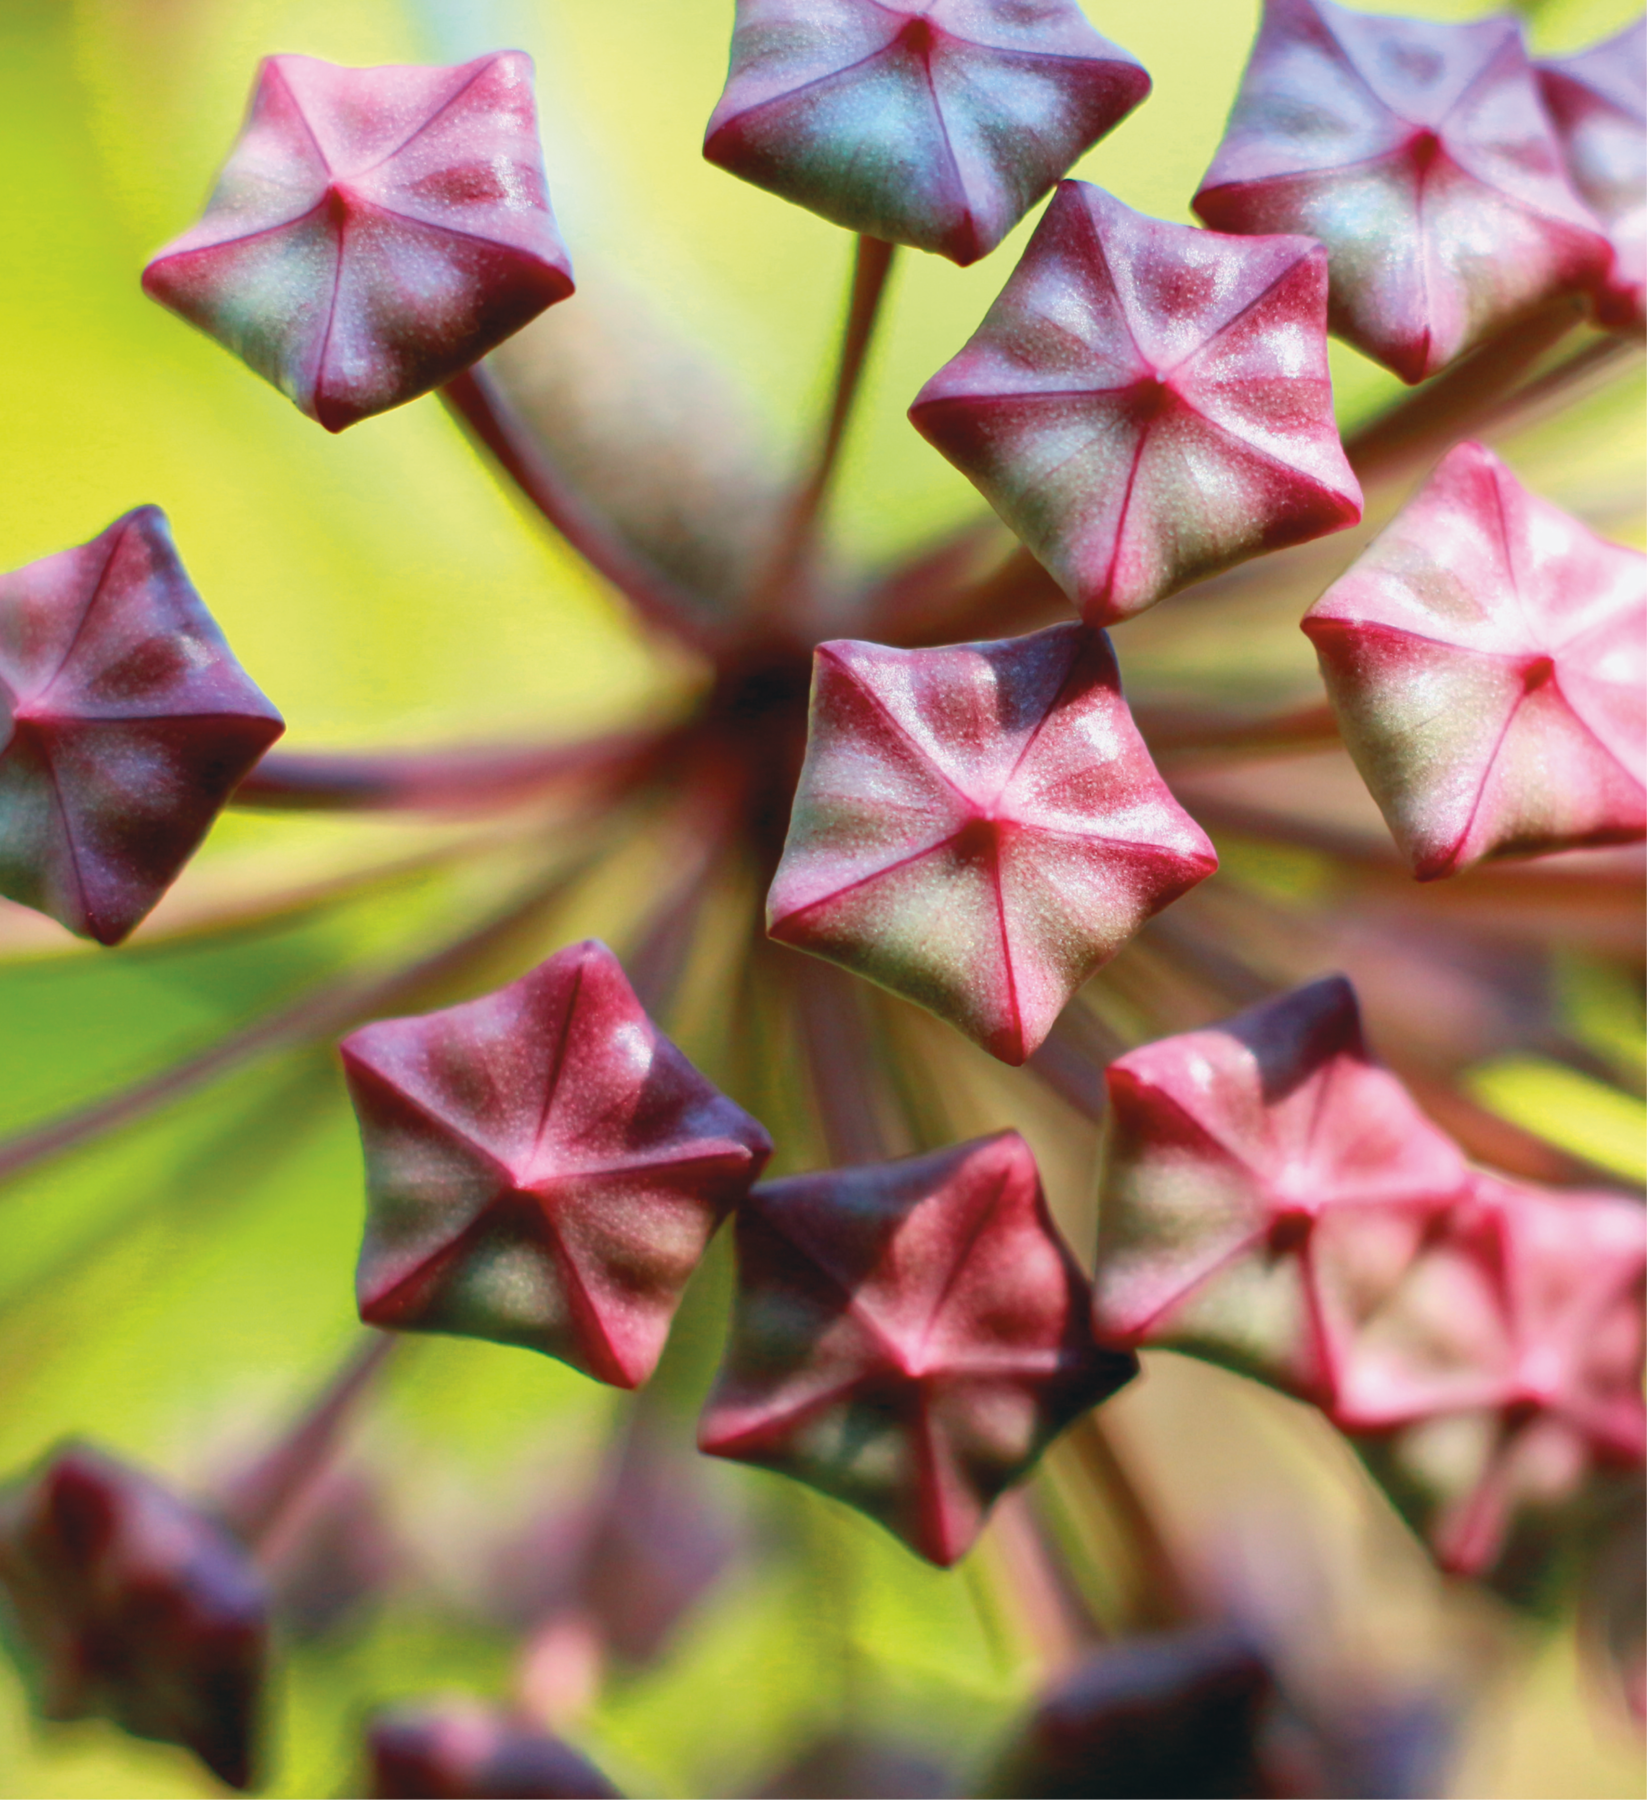 Fotografia. Botões da flor-de-cera com formato de pentágono na cor vermelha.